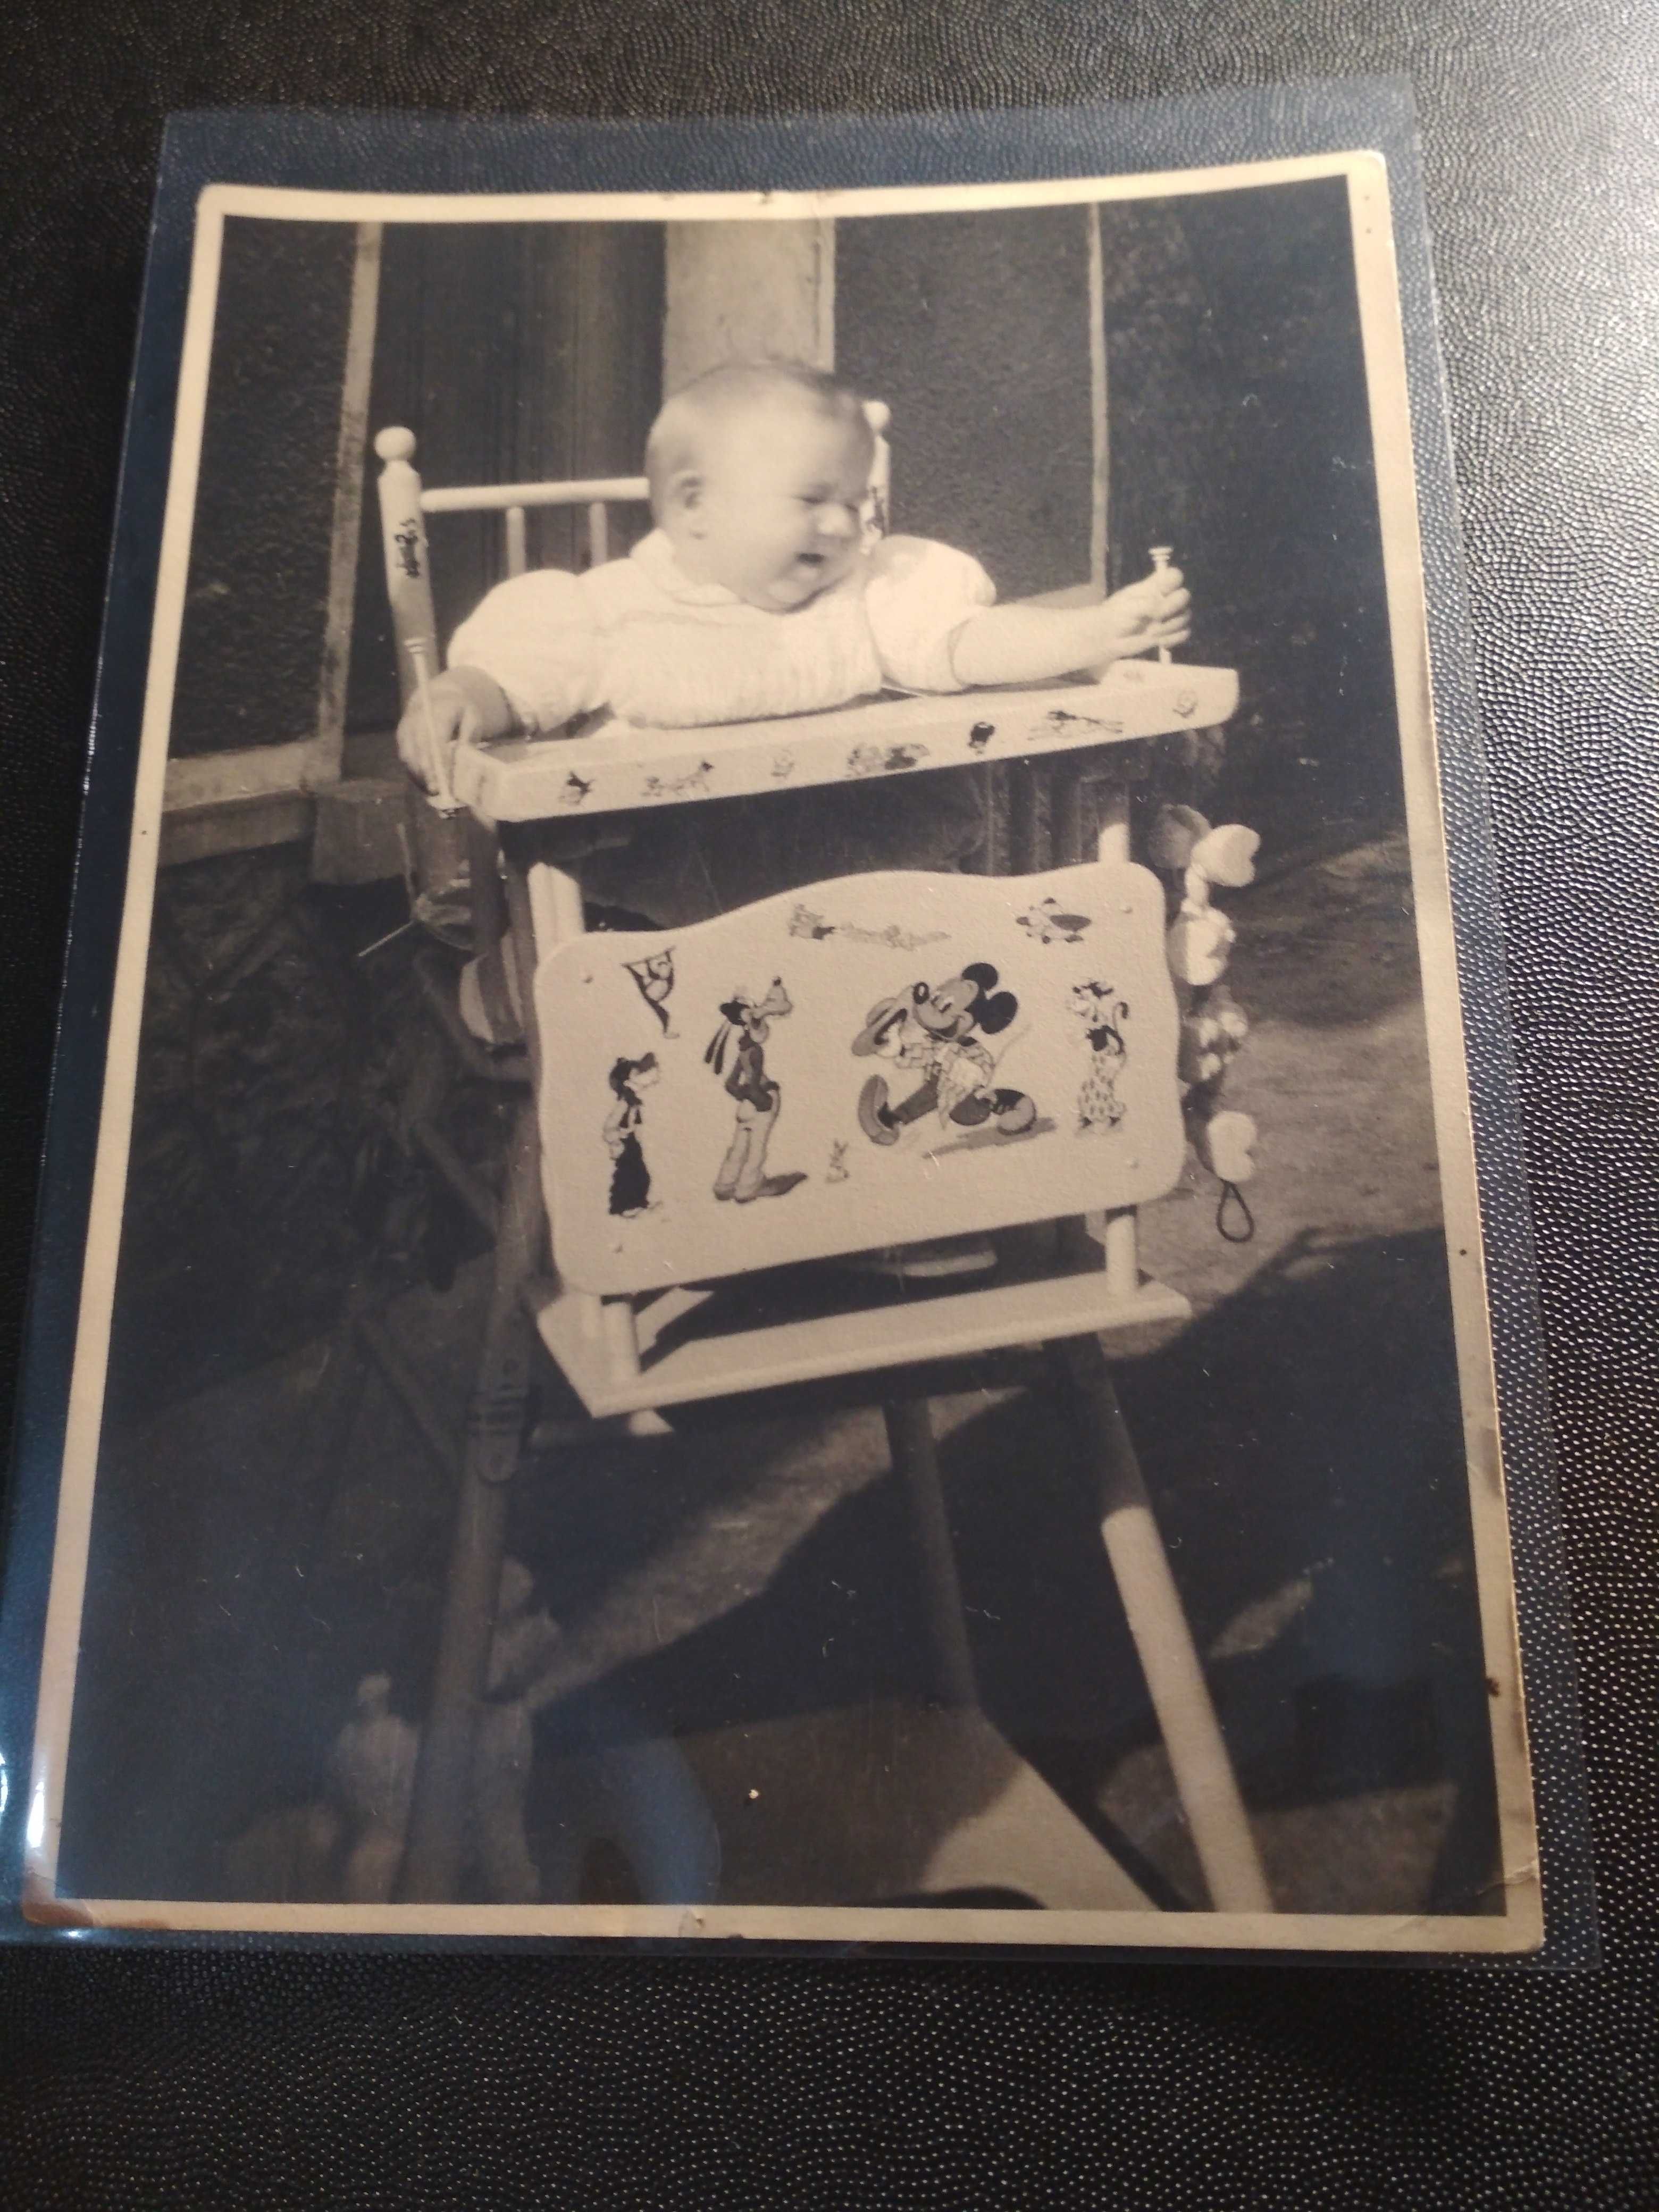 Foto antiga com imagens de bonecos da Walt Disney